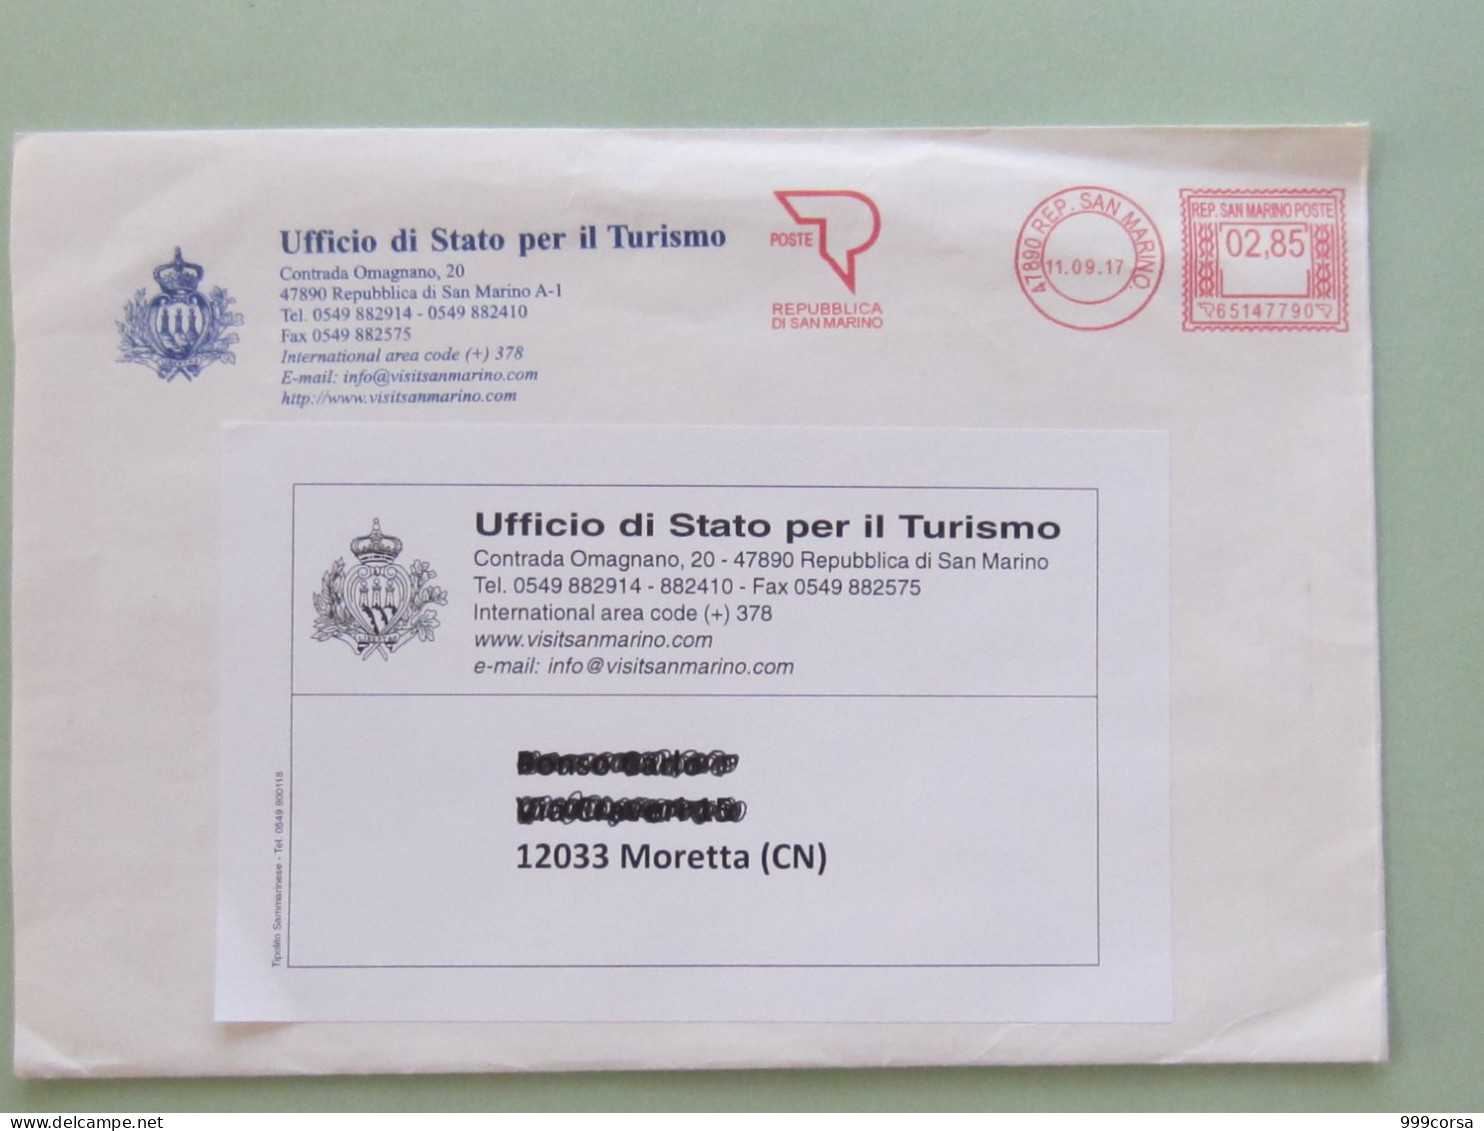 S.Marino, Ema, Affrancatura Mecc., Meter, Freistempel, Ufficio Di Stato Per Il Turismo, Tariffa 2,85, 3°porto(100g.) - Covers & Documents